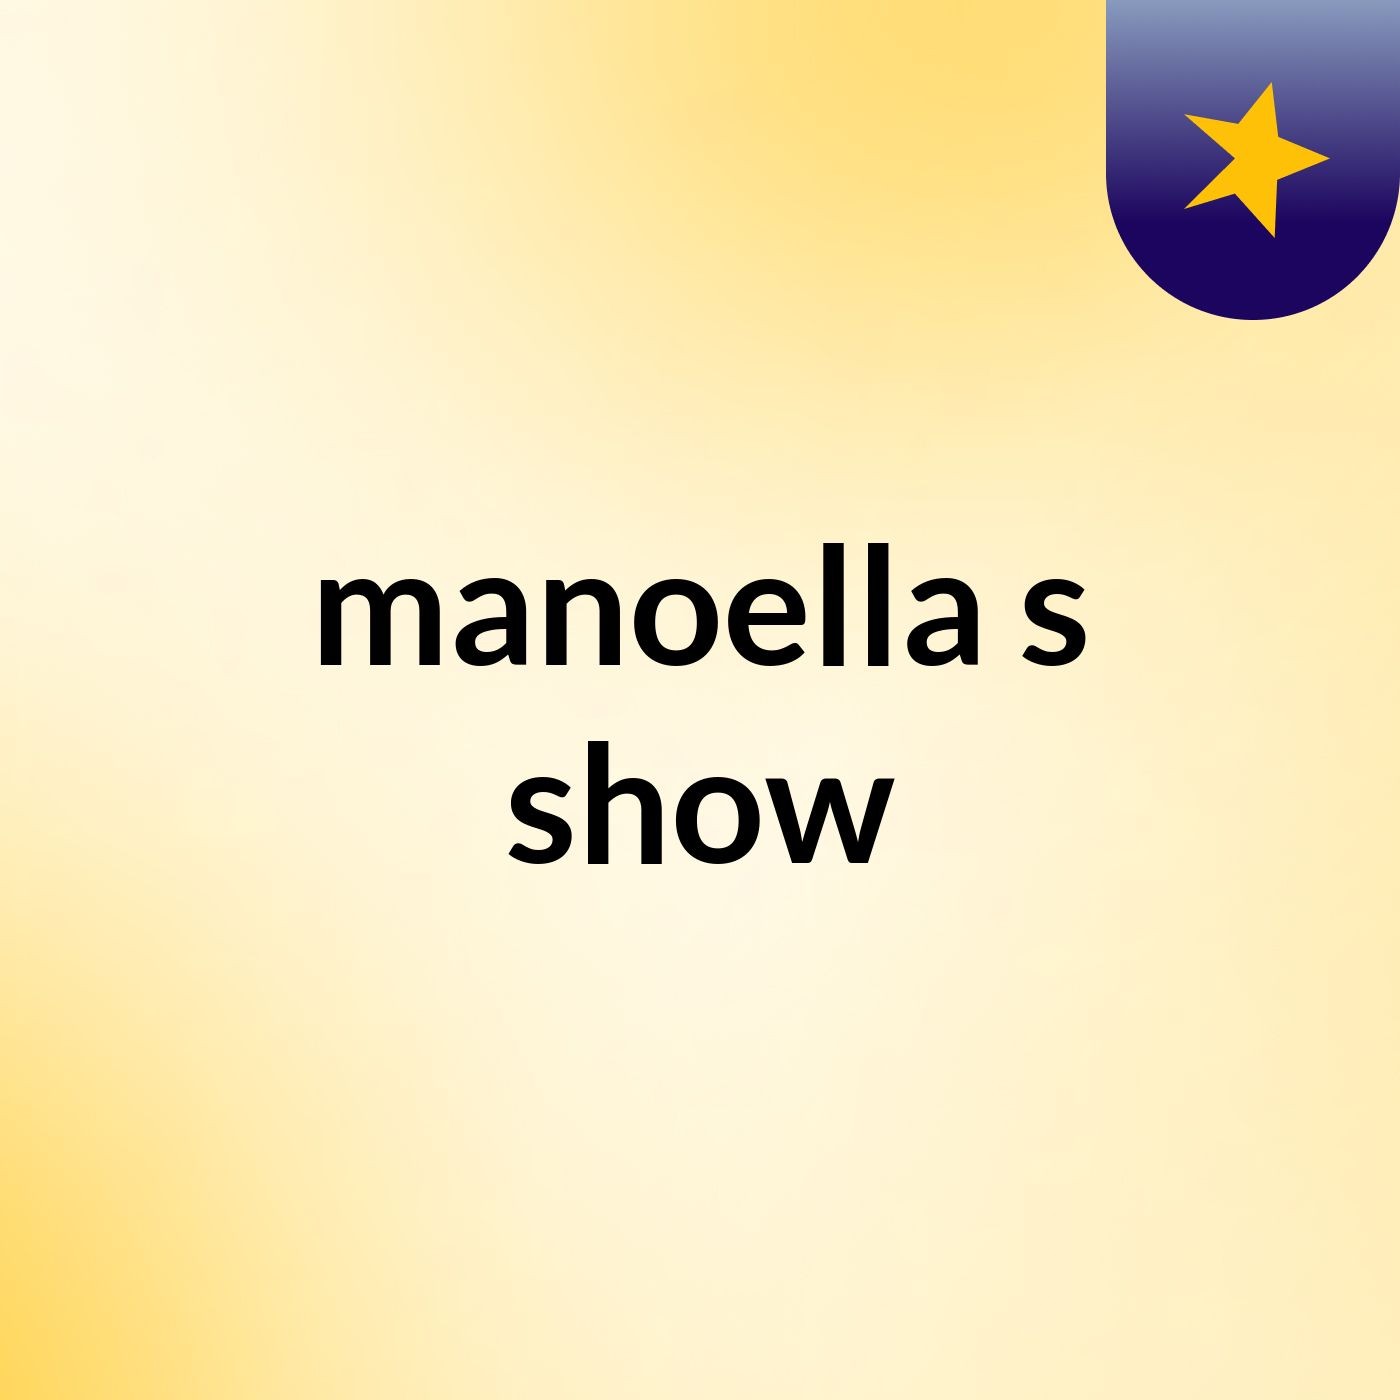 manoella's show